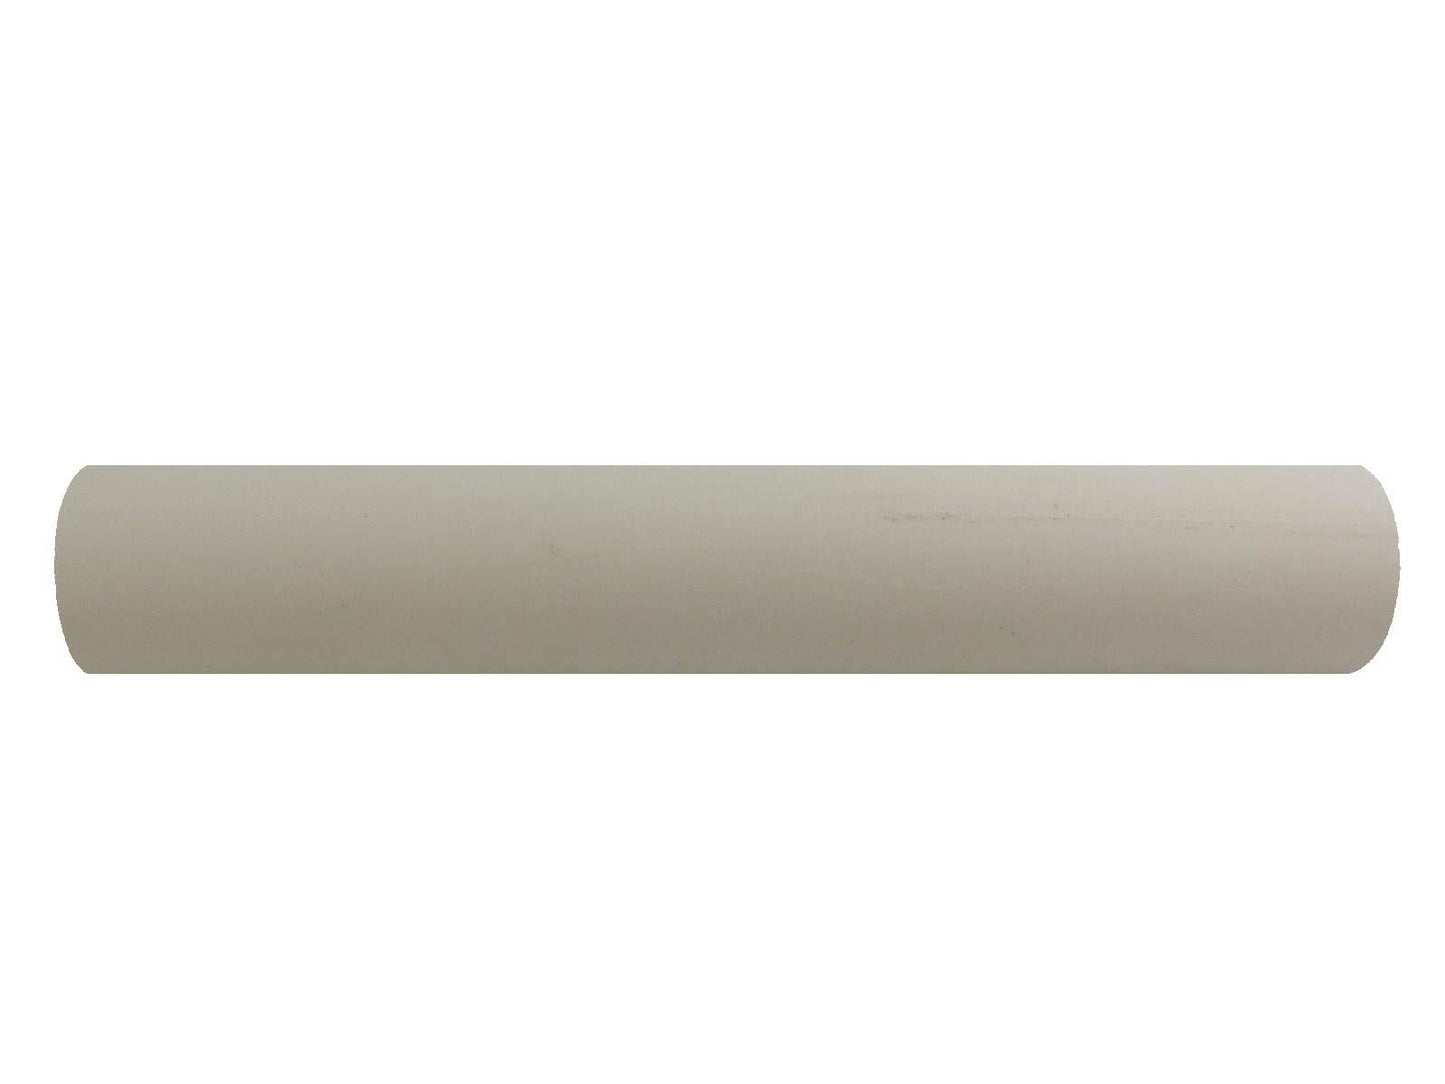 Turners' Mill Bone Polyester Rod - 150x20x20mm (5.9x0.79x0.79"), 6x3/4x3/4"